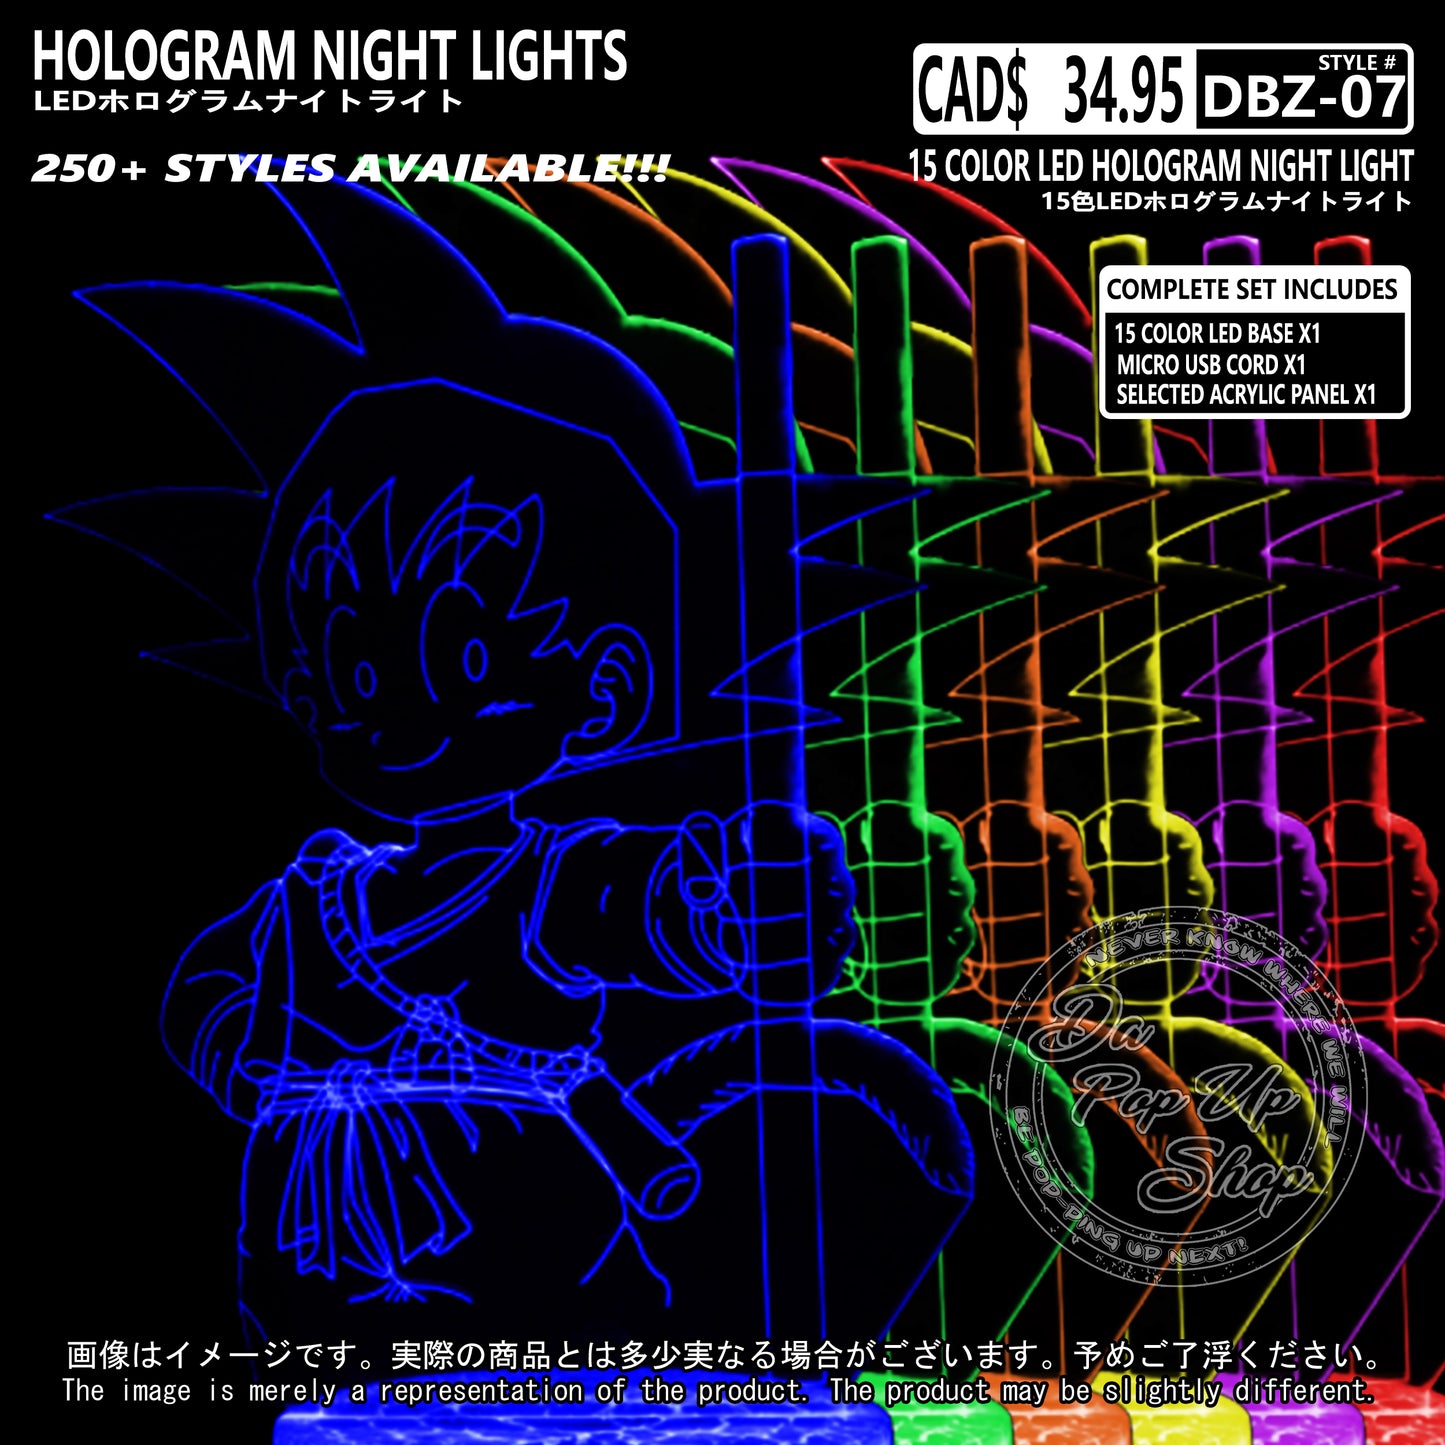 (DBZ-07) Dragon Ball Z Hologram LED Night Light